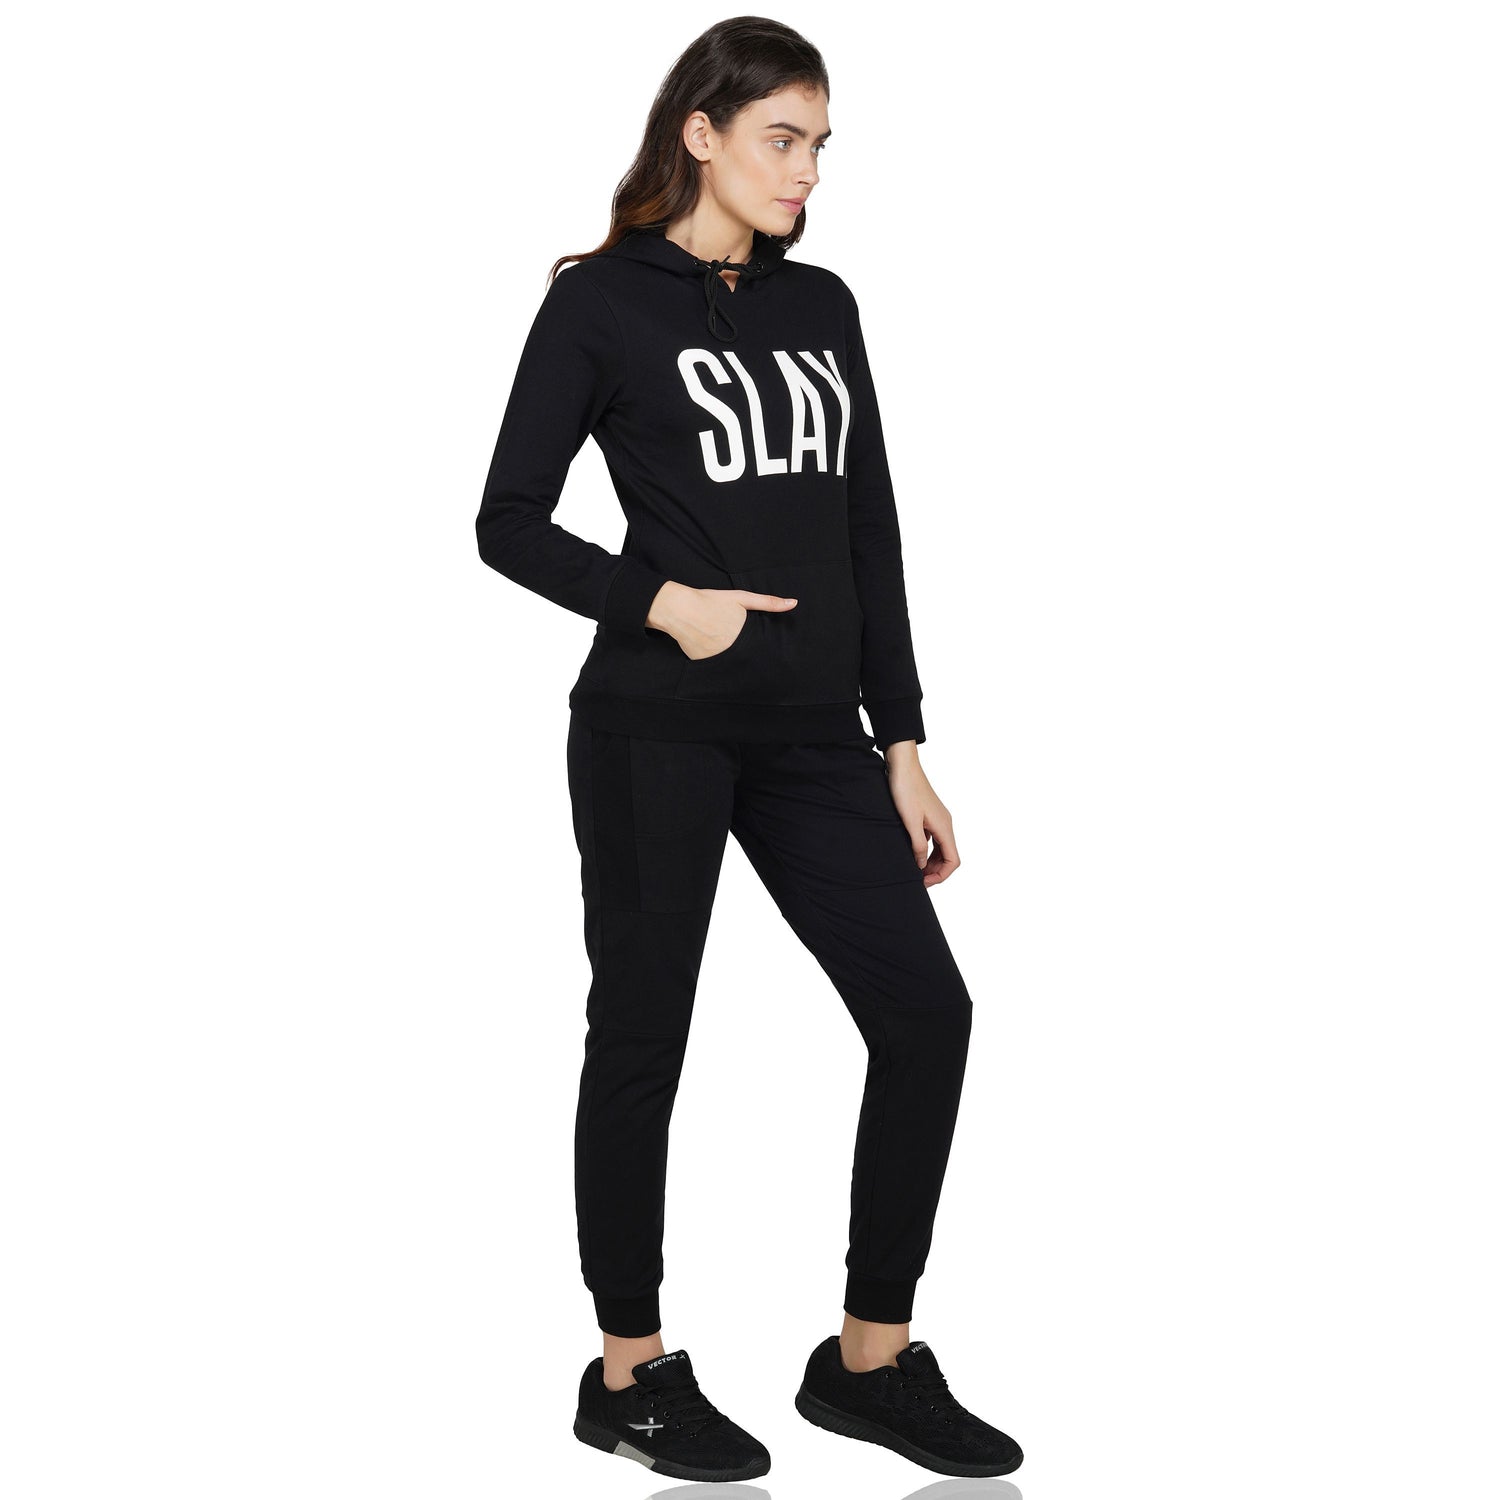 SLAY. Classic Women's Black Tracksuit-clothing-to-slay.myshopify.com-Tracksuit